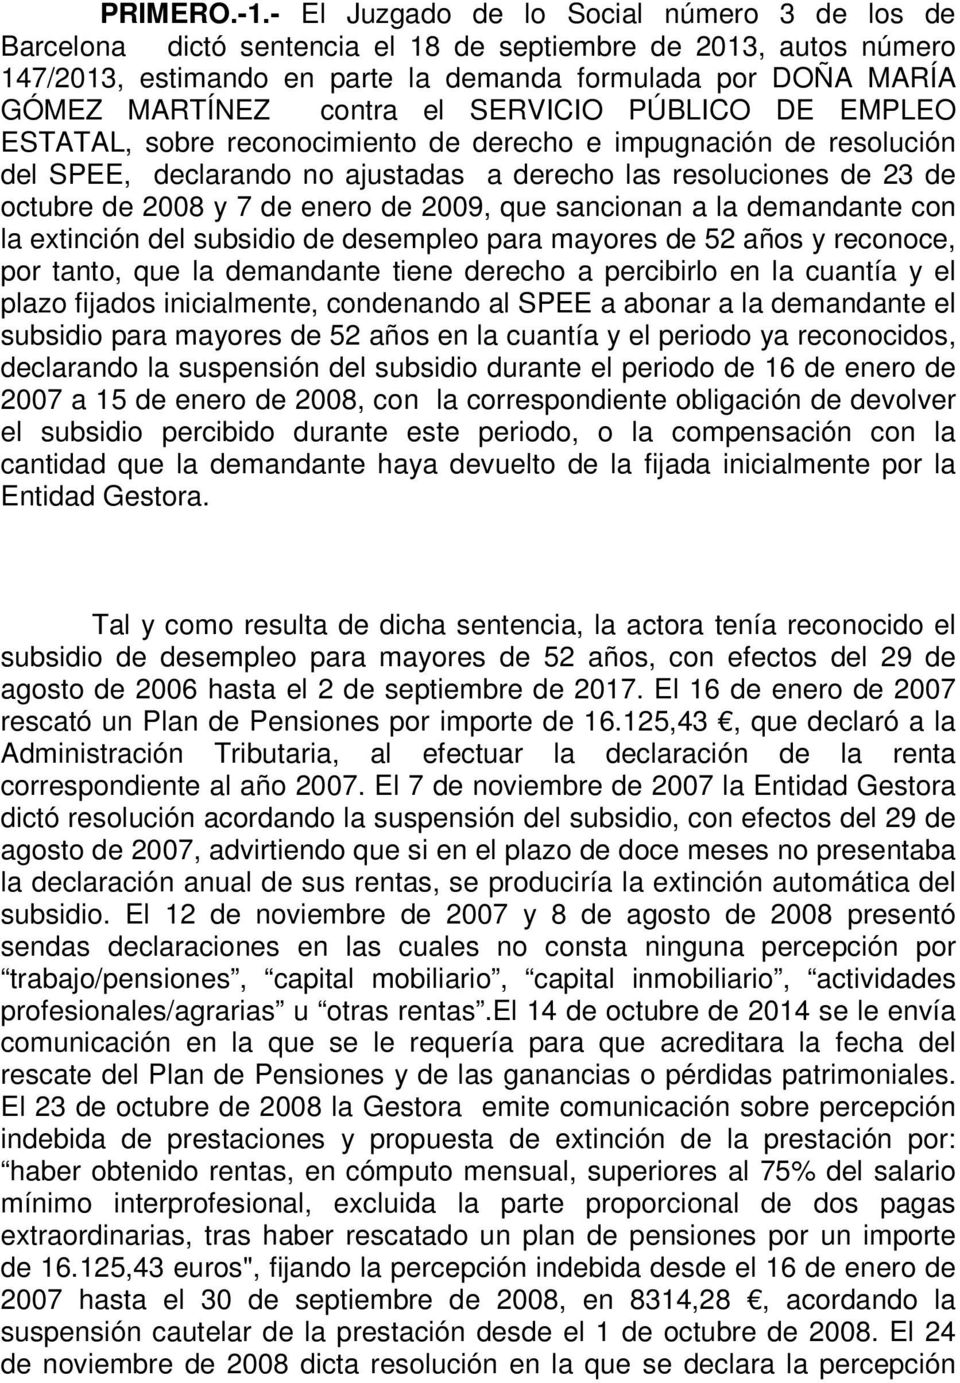 el SERVICIO PÚBLICO DE EMPLEO ESTATAL, sobre reconocimiento de derecho e impugnación de resolución del SPEE, declarando no ajustadas a derecho las resoluciones de 23 de octubre de 2008 y 7 de enero